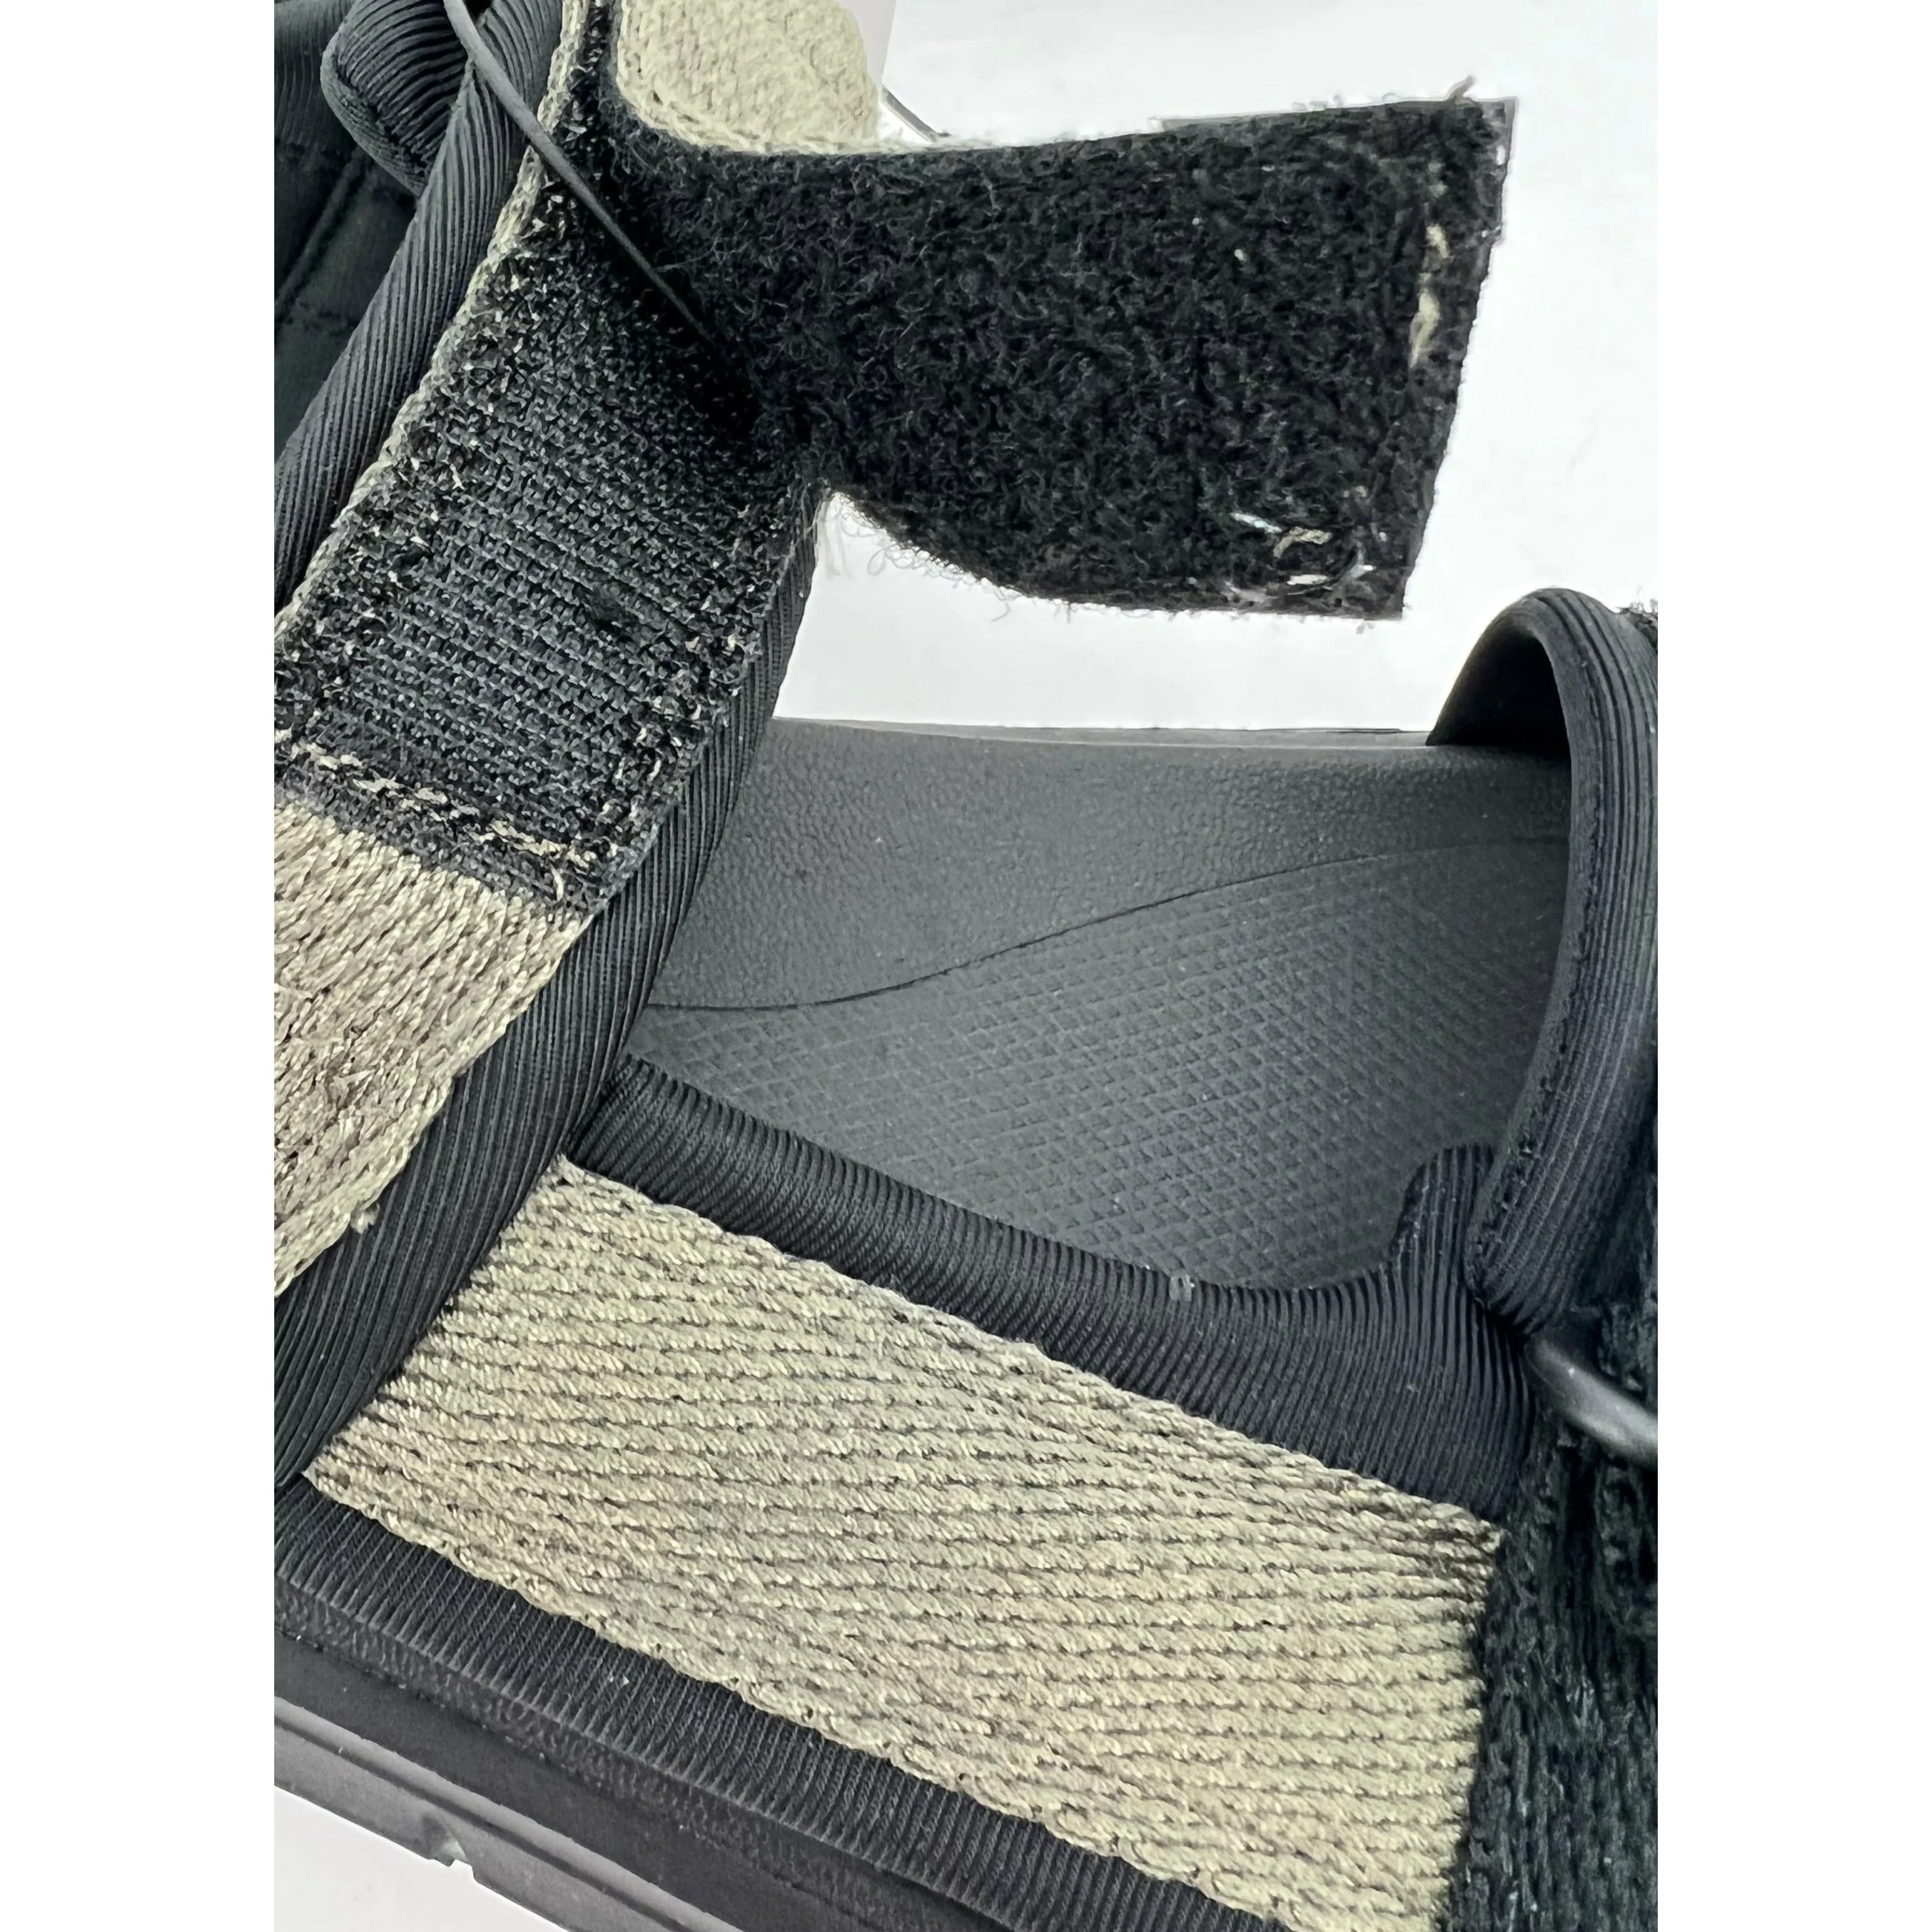 Dockers Men's Sandals / Soren2 / Green / Size 12